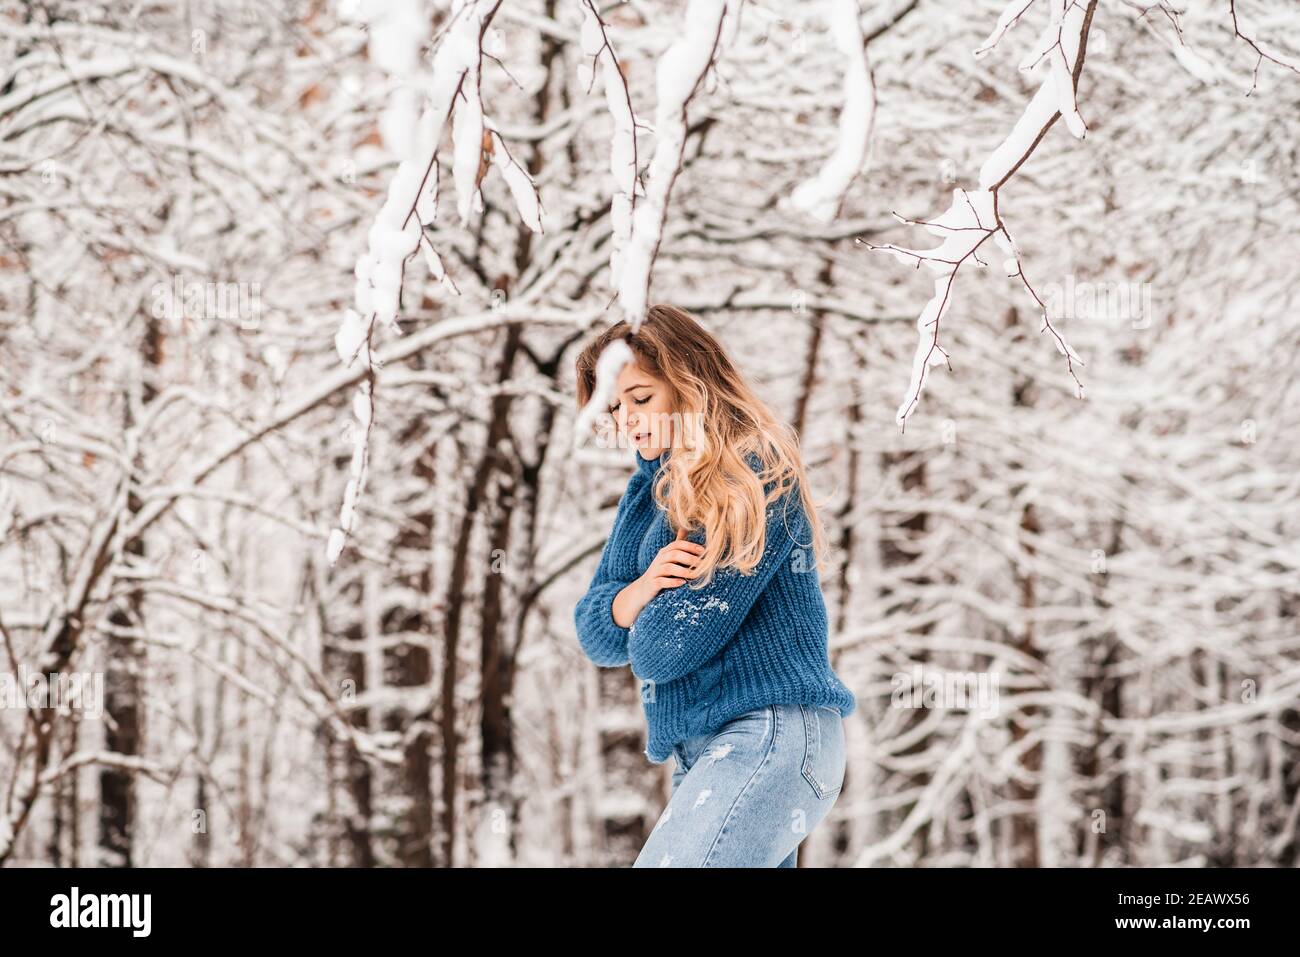 bella ragazza d'inverno in un pullover in maglia blu accogliente che gioca con neve Foto Stock